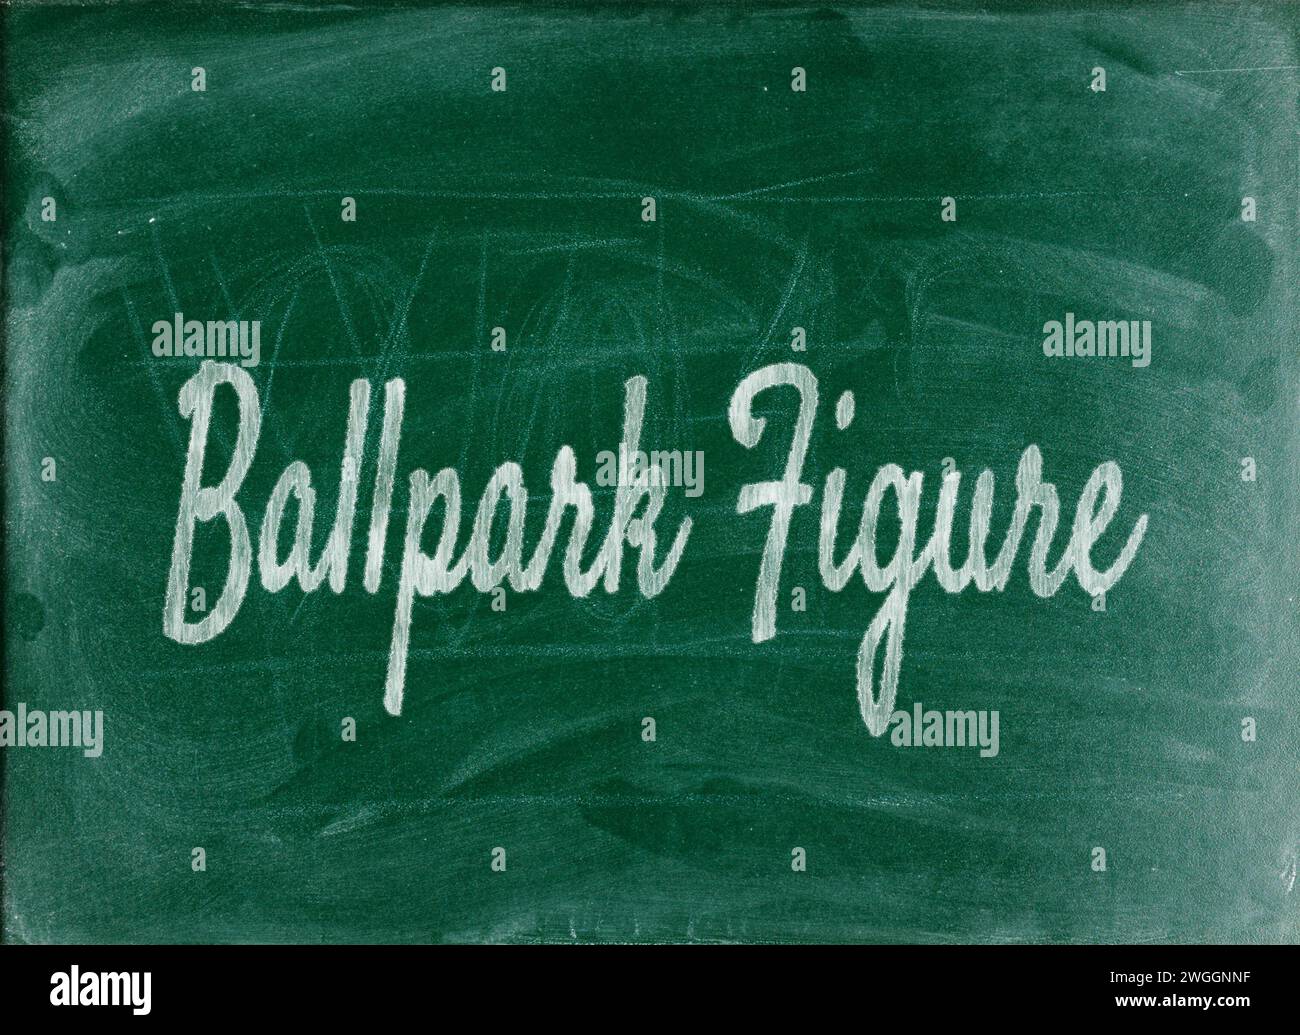 Ballpark-Wert – bezieht sich auf einen ungefähren oder geschätzten Wert oder die Kosten. Schlüsselwörter: Schätzung, Approximation, Wert. Stockfoto